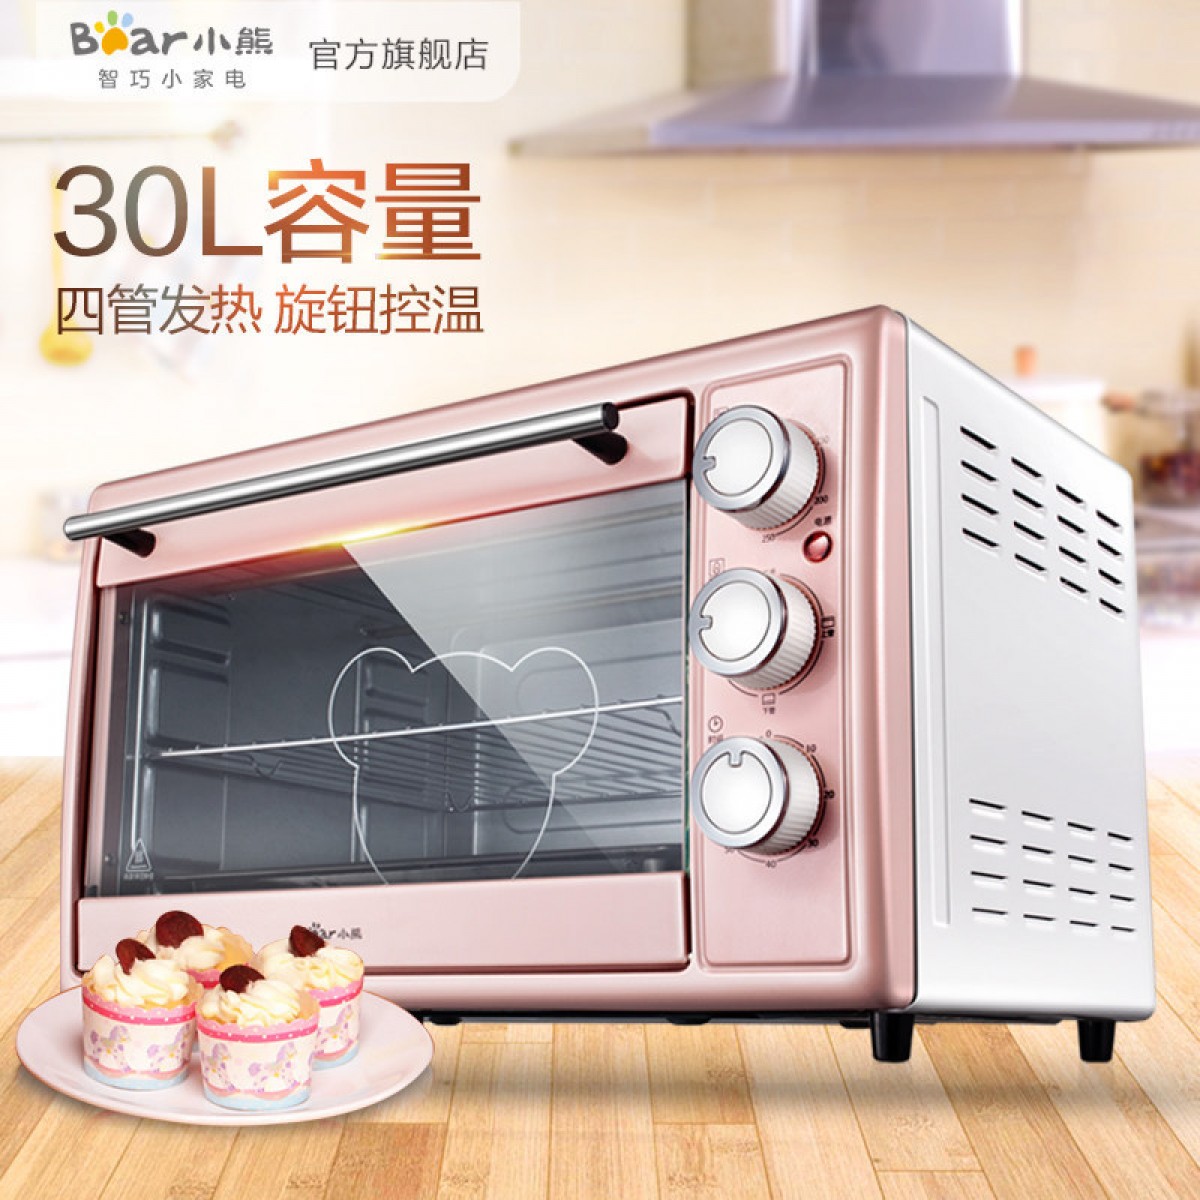 Bear/小熊 DKX-B30N1多功能电烤箱家用烘焙迷你蛋糕30升大容量